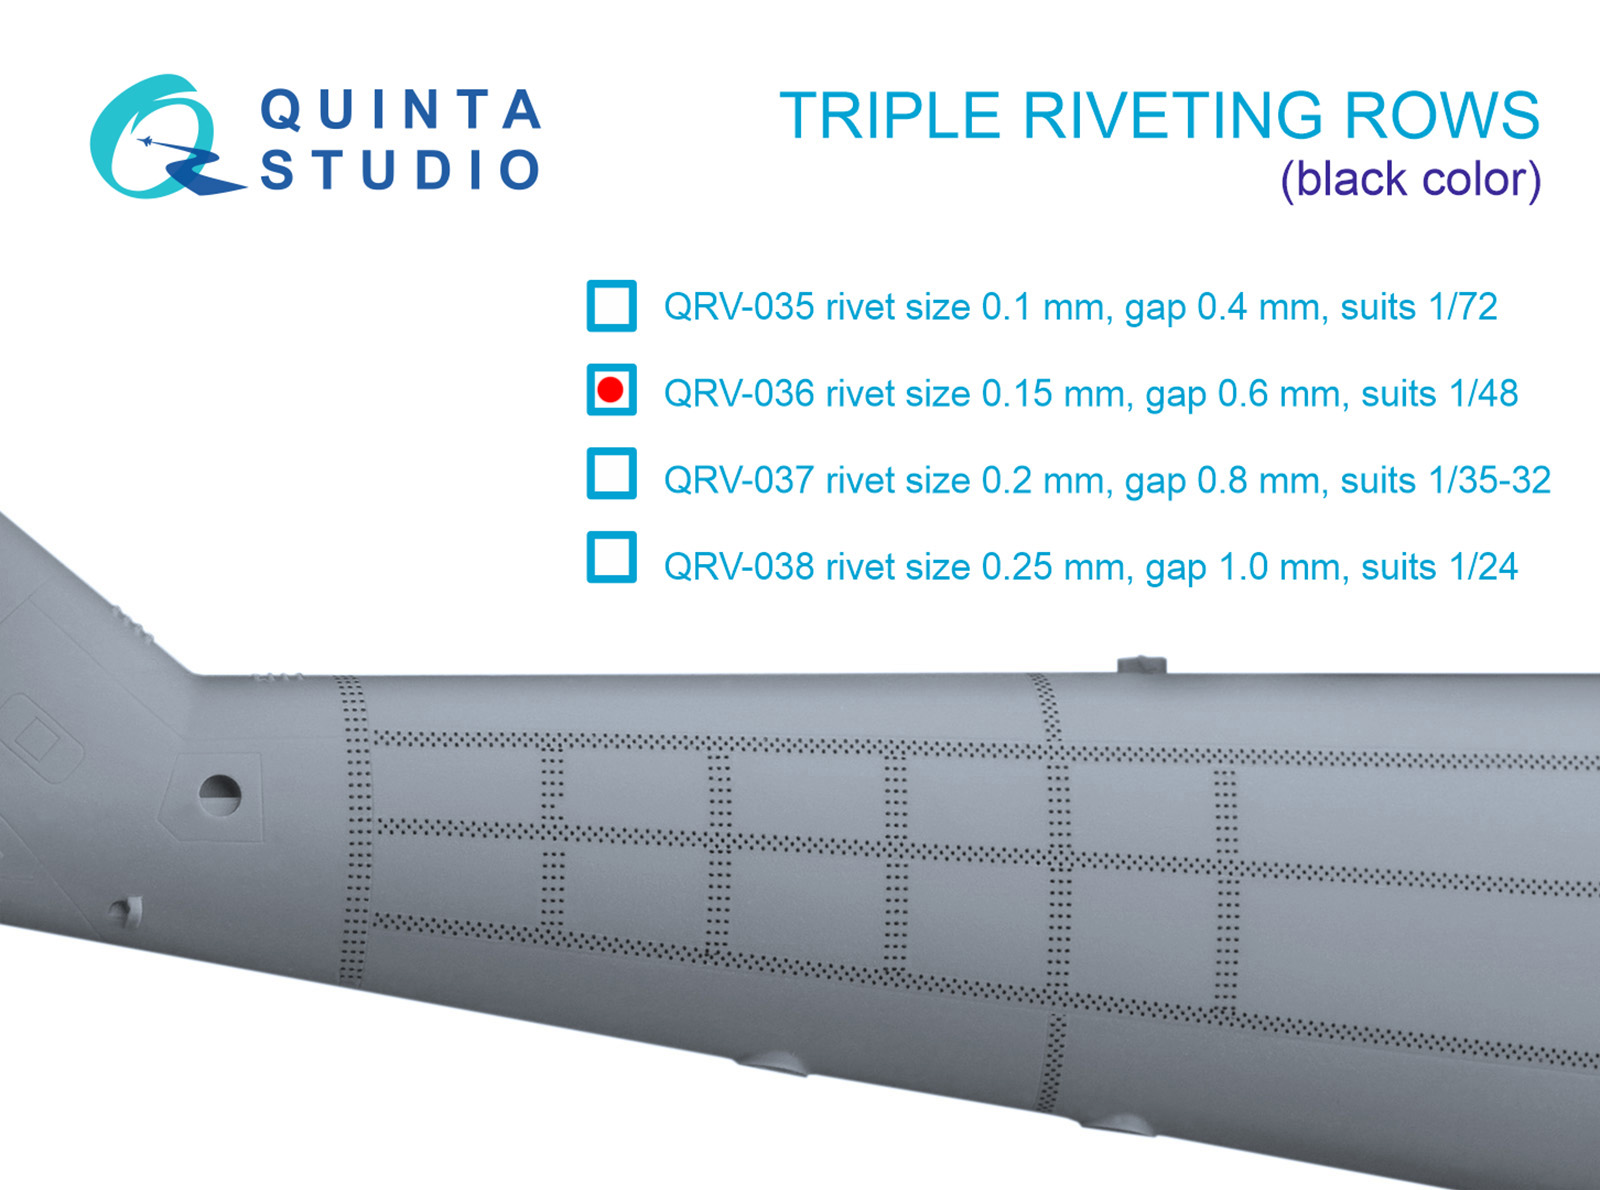 Triple riveting rows (rivet size 0.15 mm, gap 0.6 mm, suits 1/48 scale), Black color, total length 4.4 m/14 ft